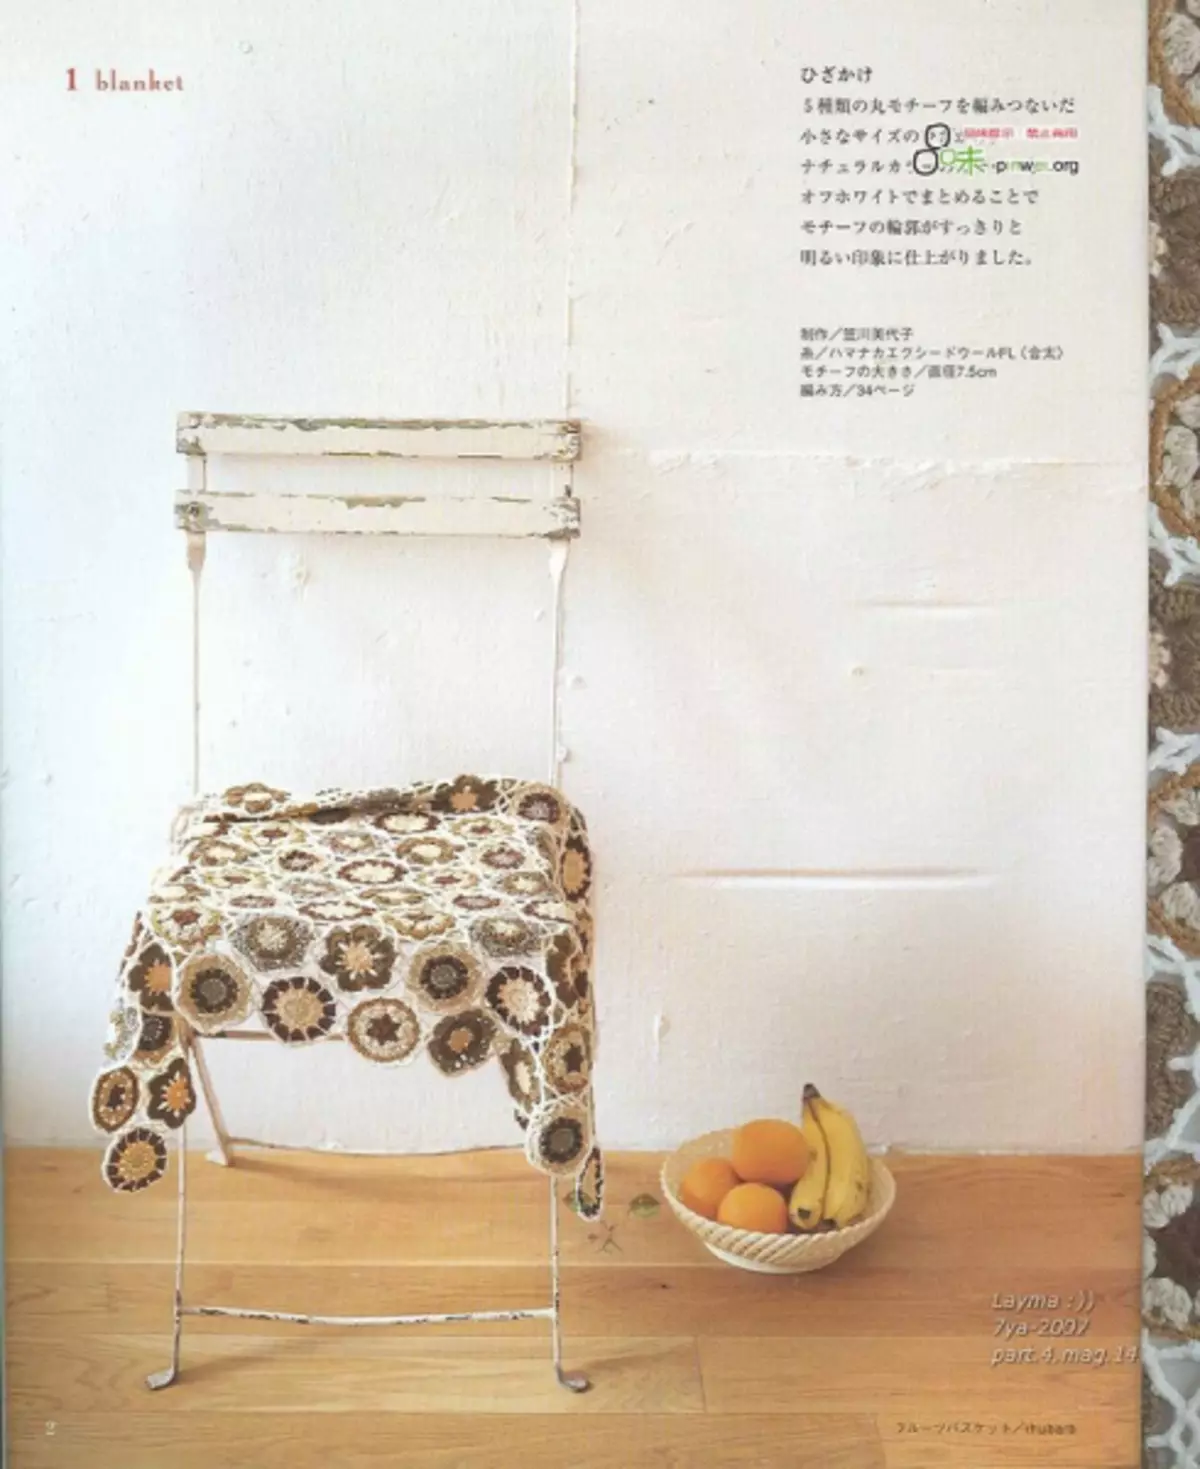 کروکټ. جاپاني مجله